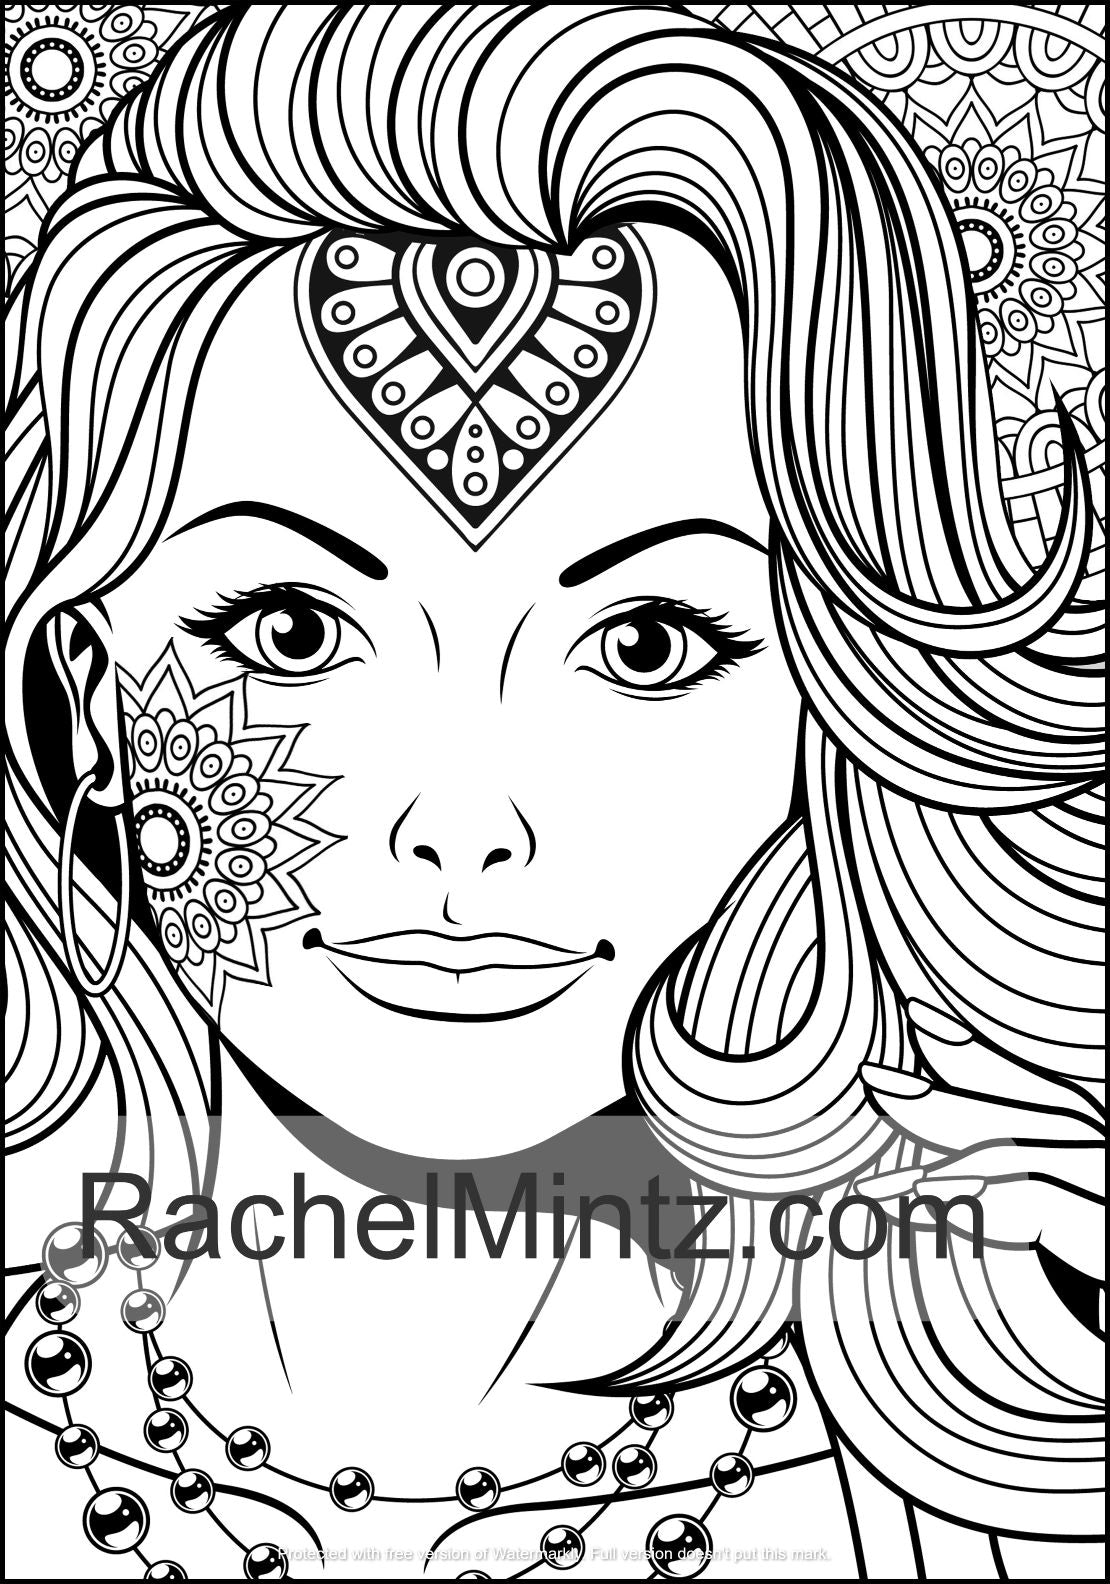 Mandala Women Coloring Book (Digital Format) Rachel Mintz